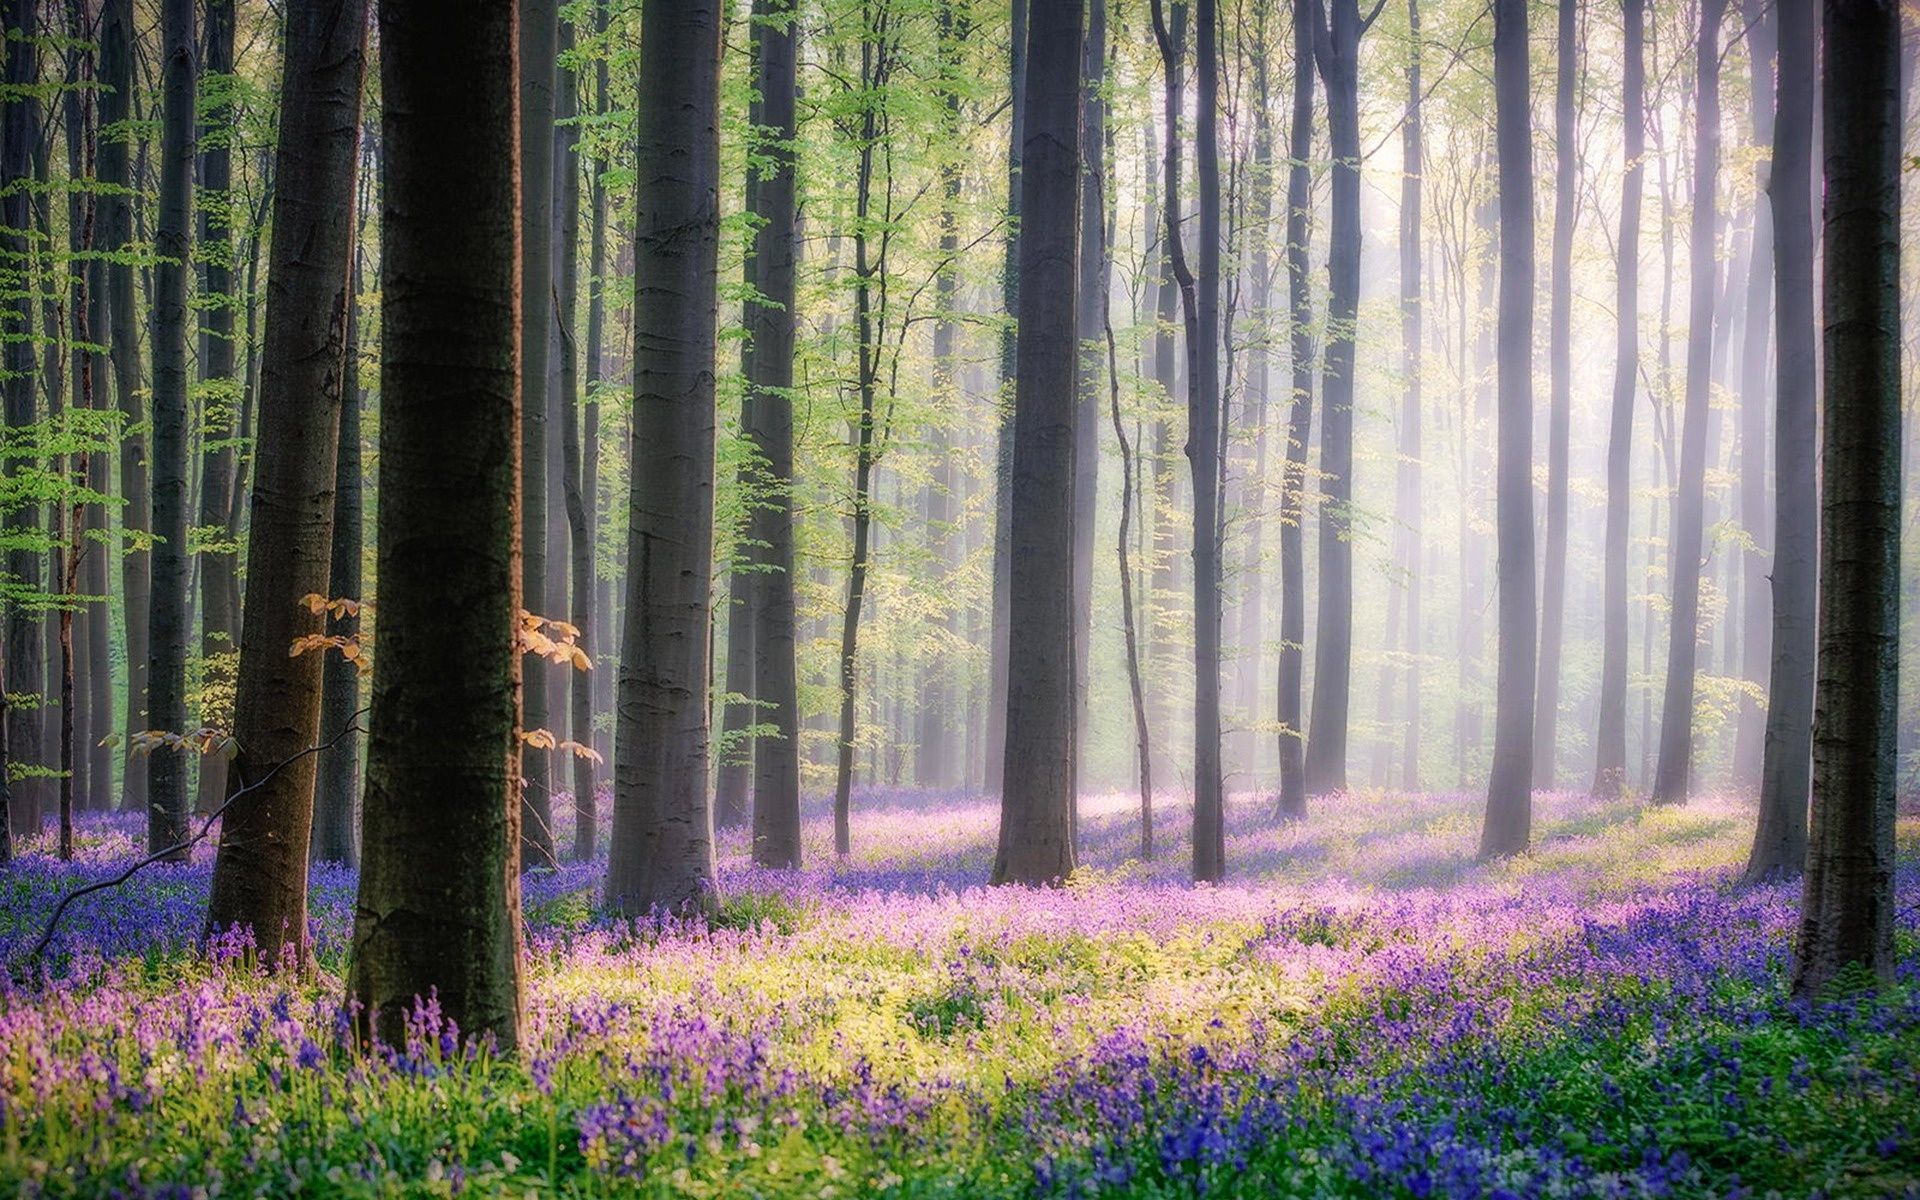 عکس جنگل سرسبز و رویایی با گل های رنگارنگ آبی و بنفش